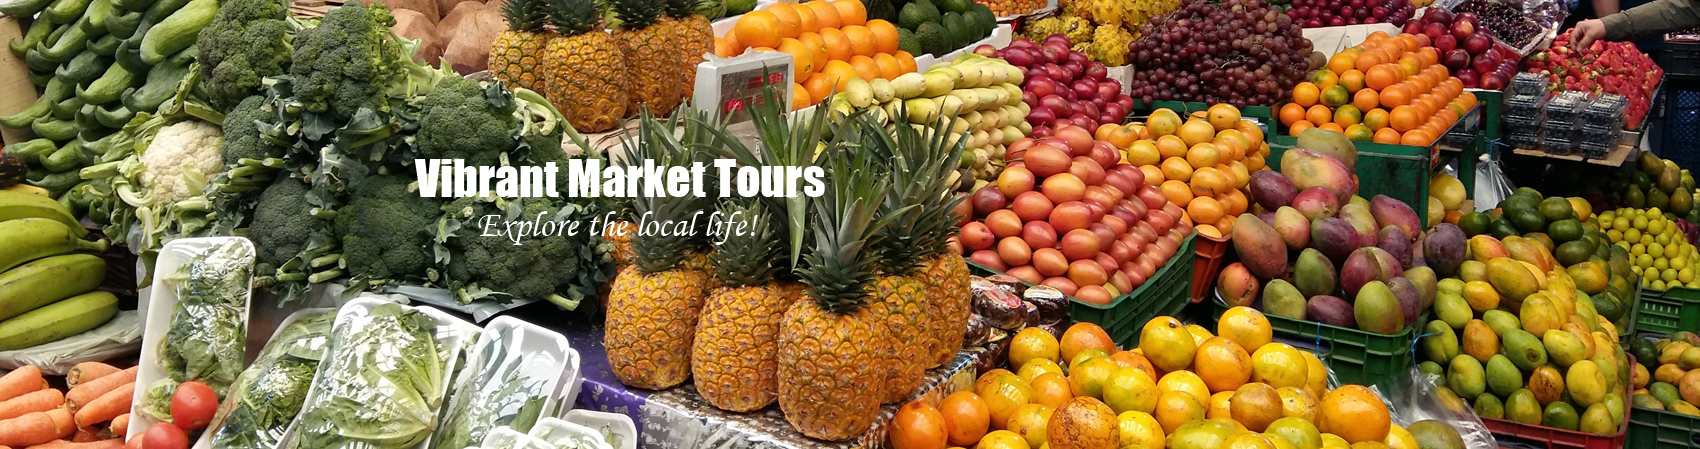 Vibrant Market Tours